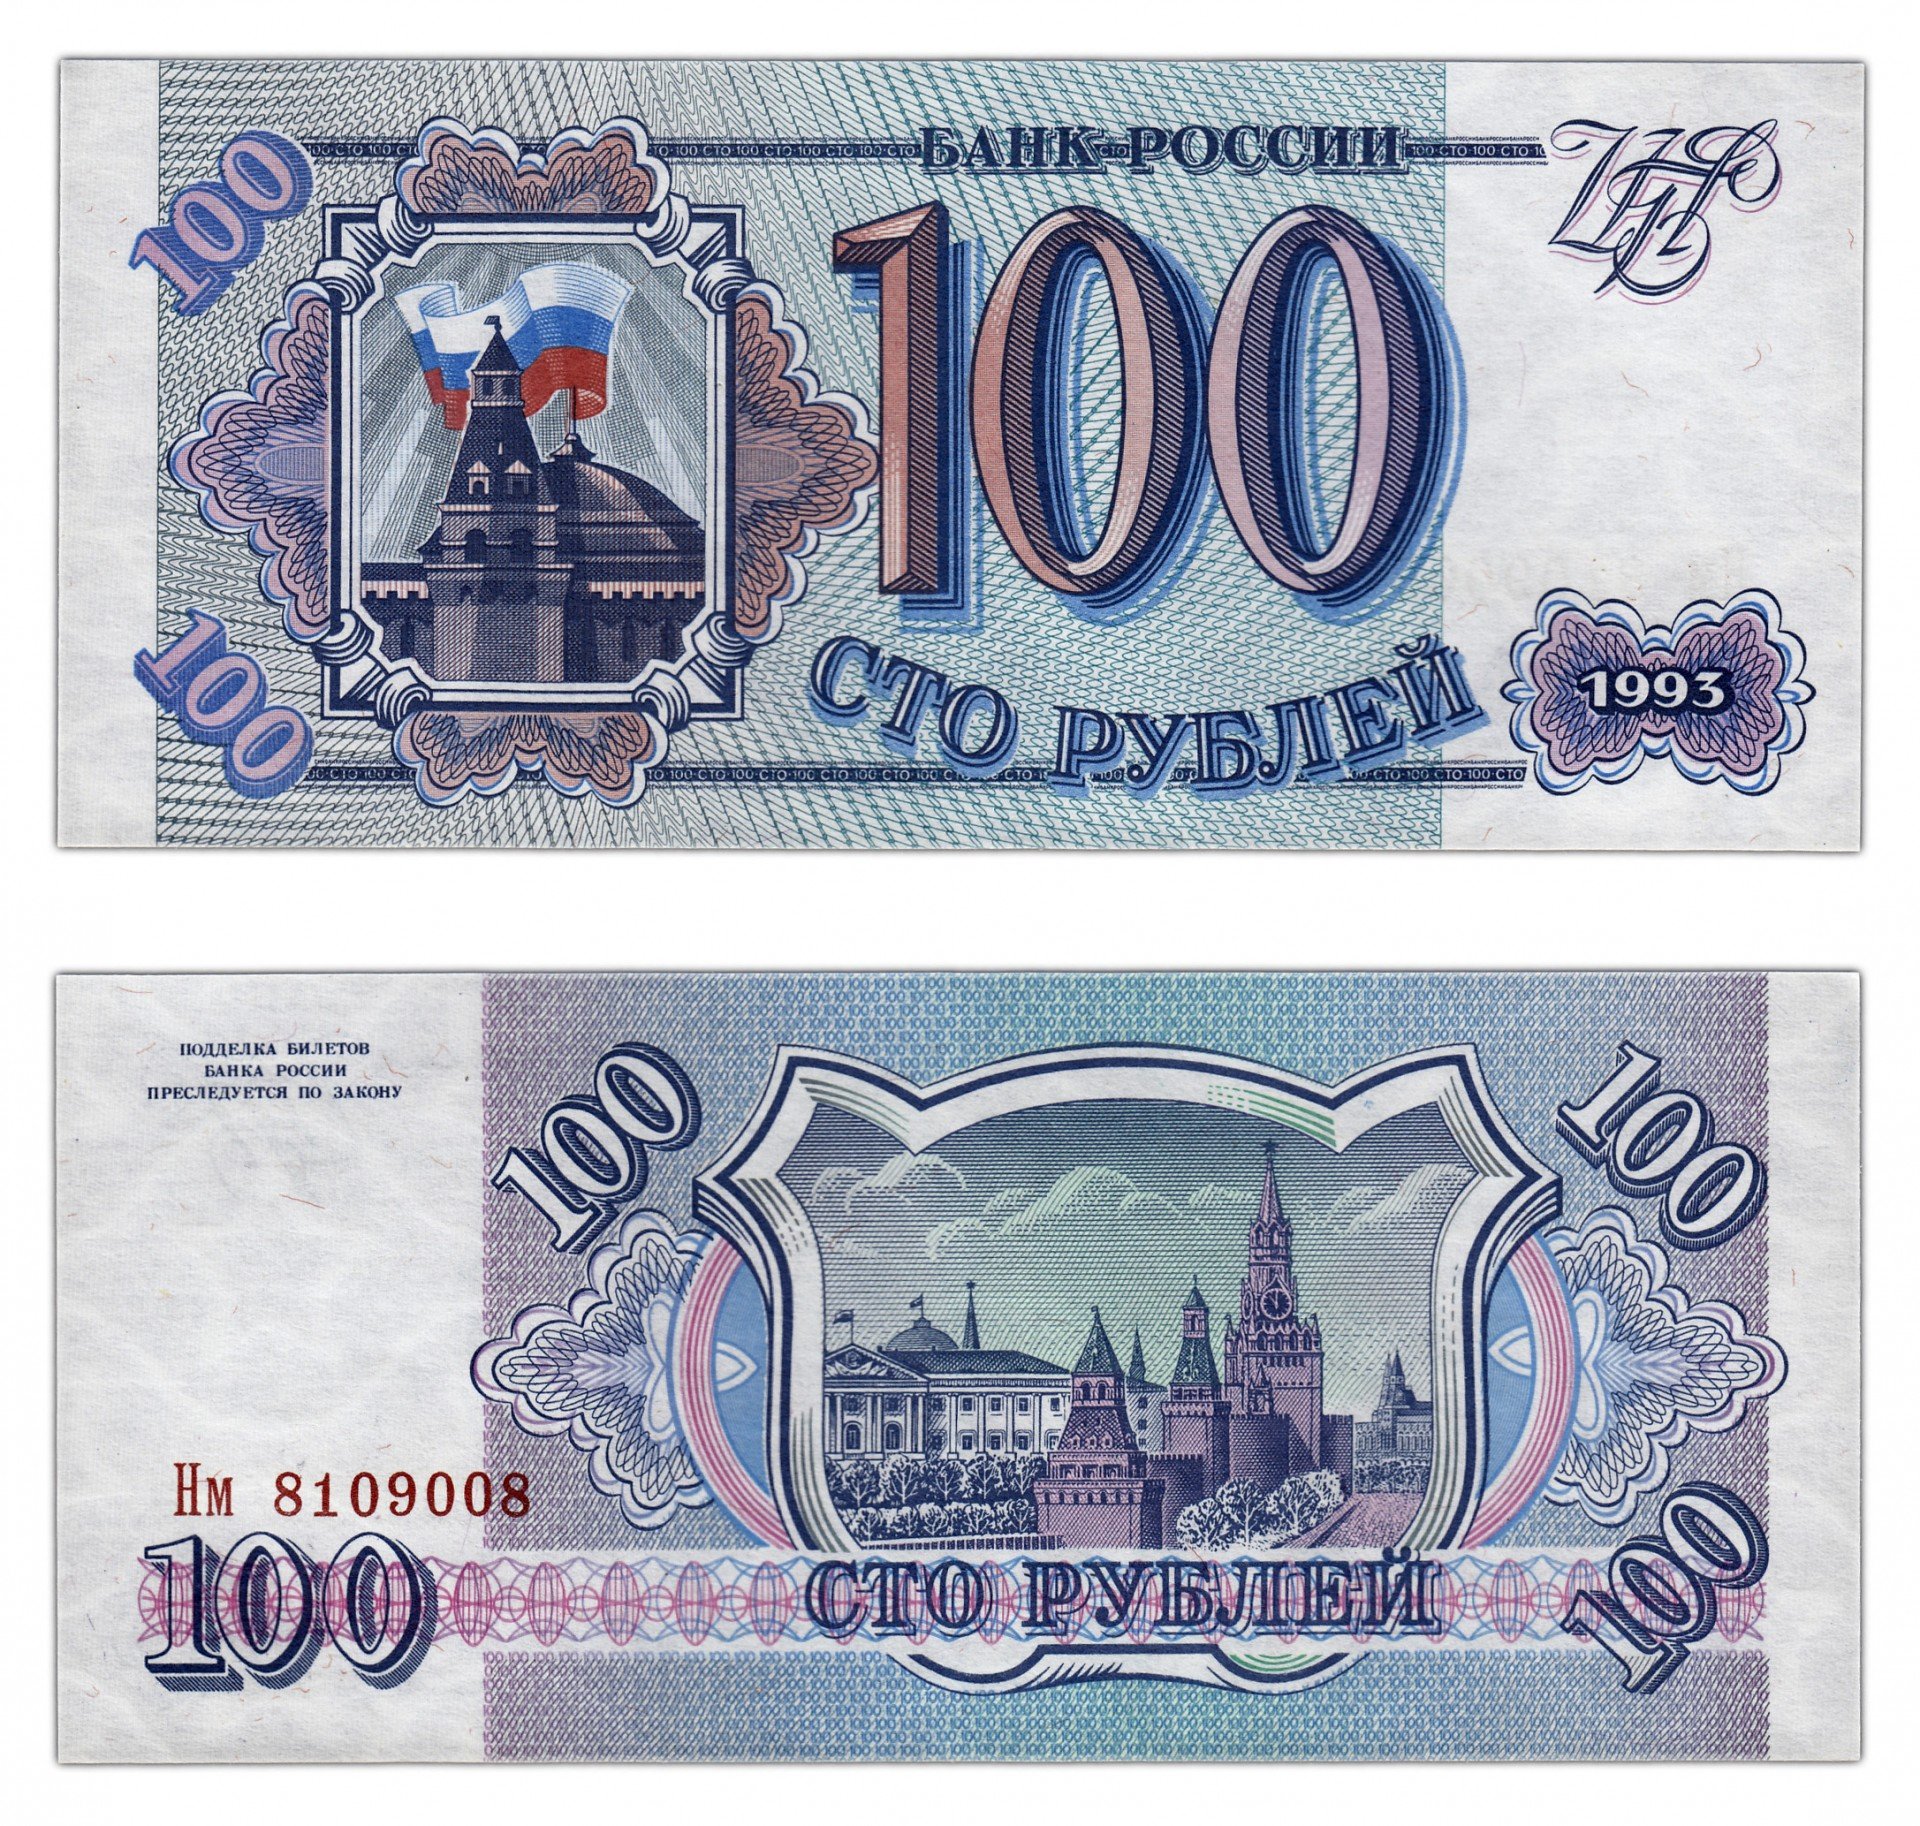 Цена купюр 1993. Деньги России 1993 1995 года. Банкноты банка России образца 1993. Синие 100 рублей 1993 года. 100 Рублей.